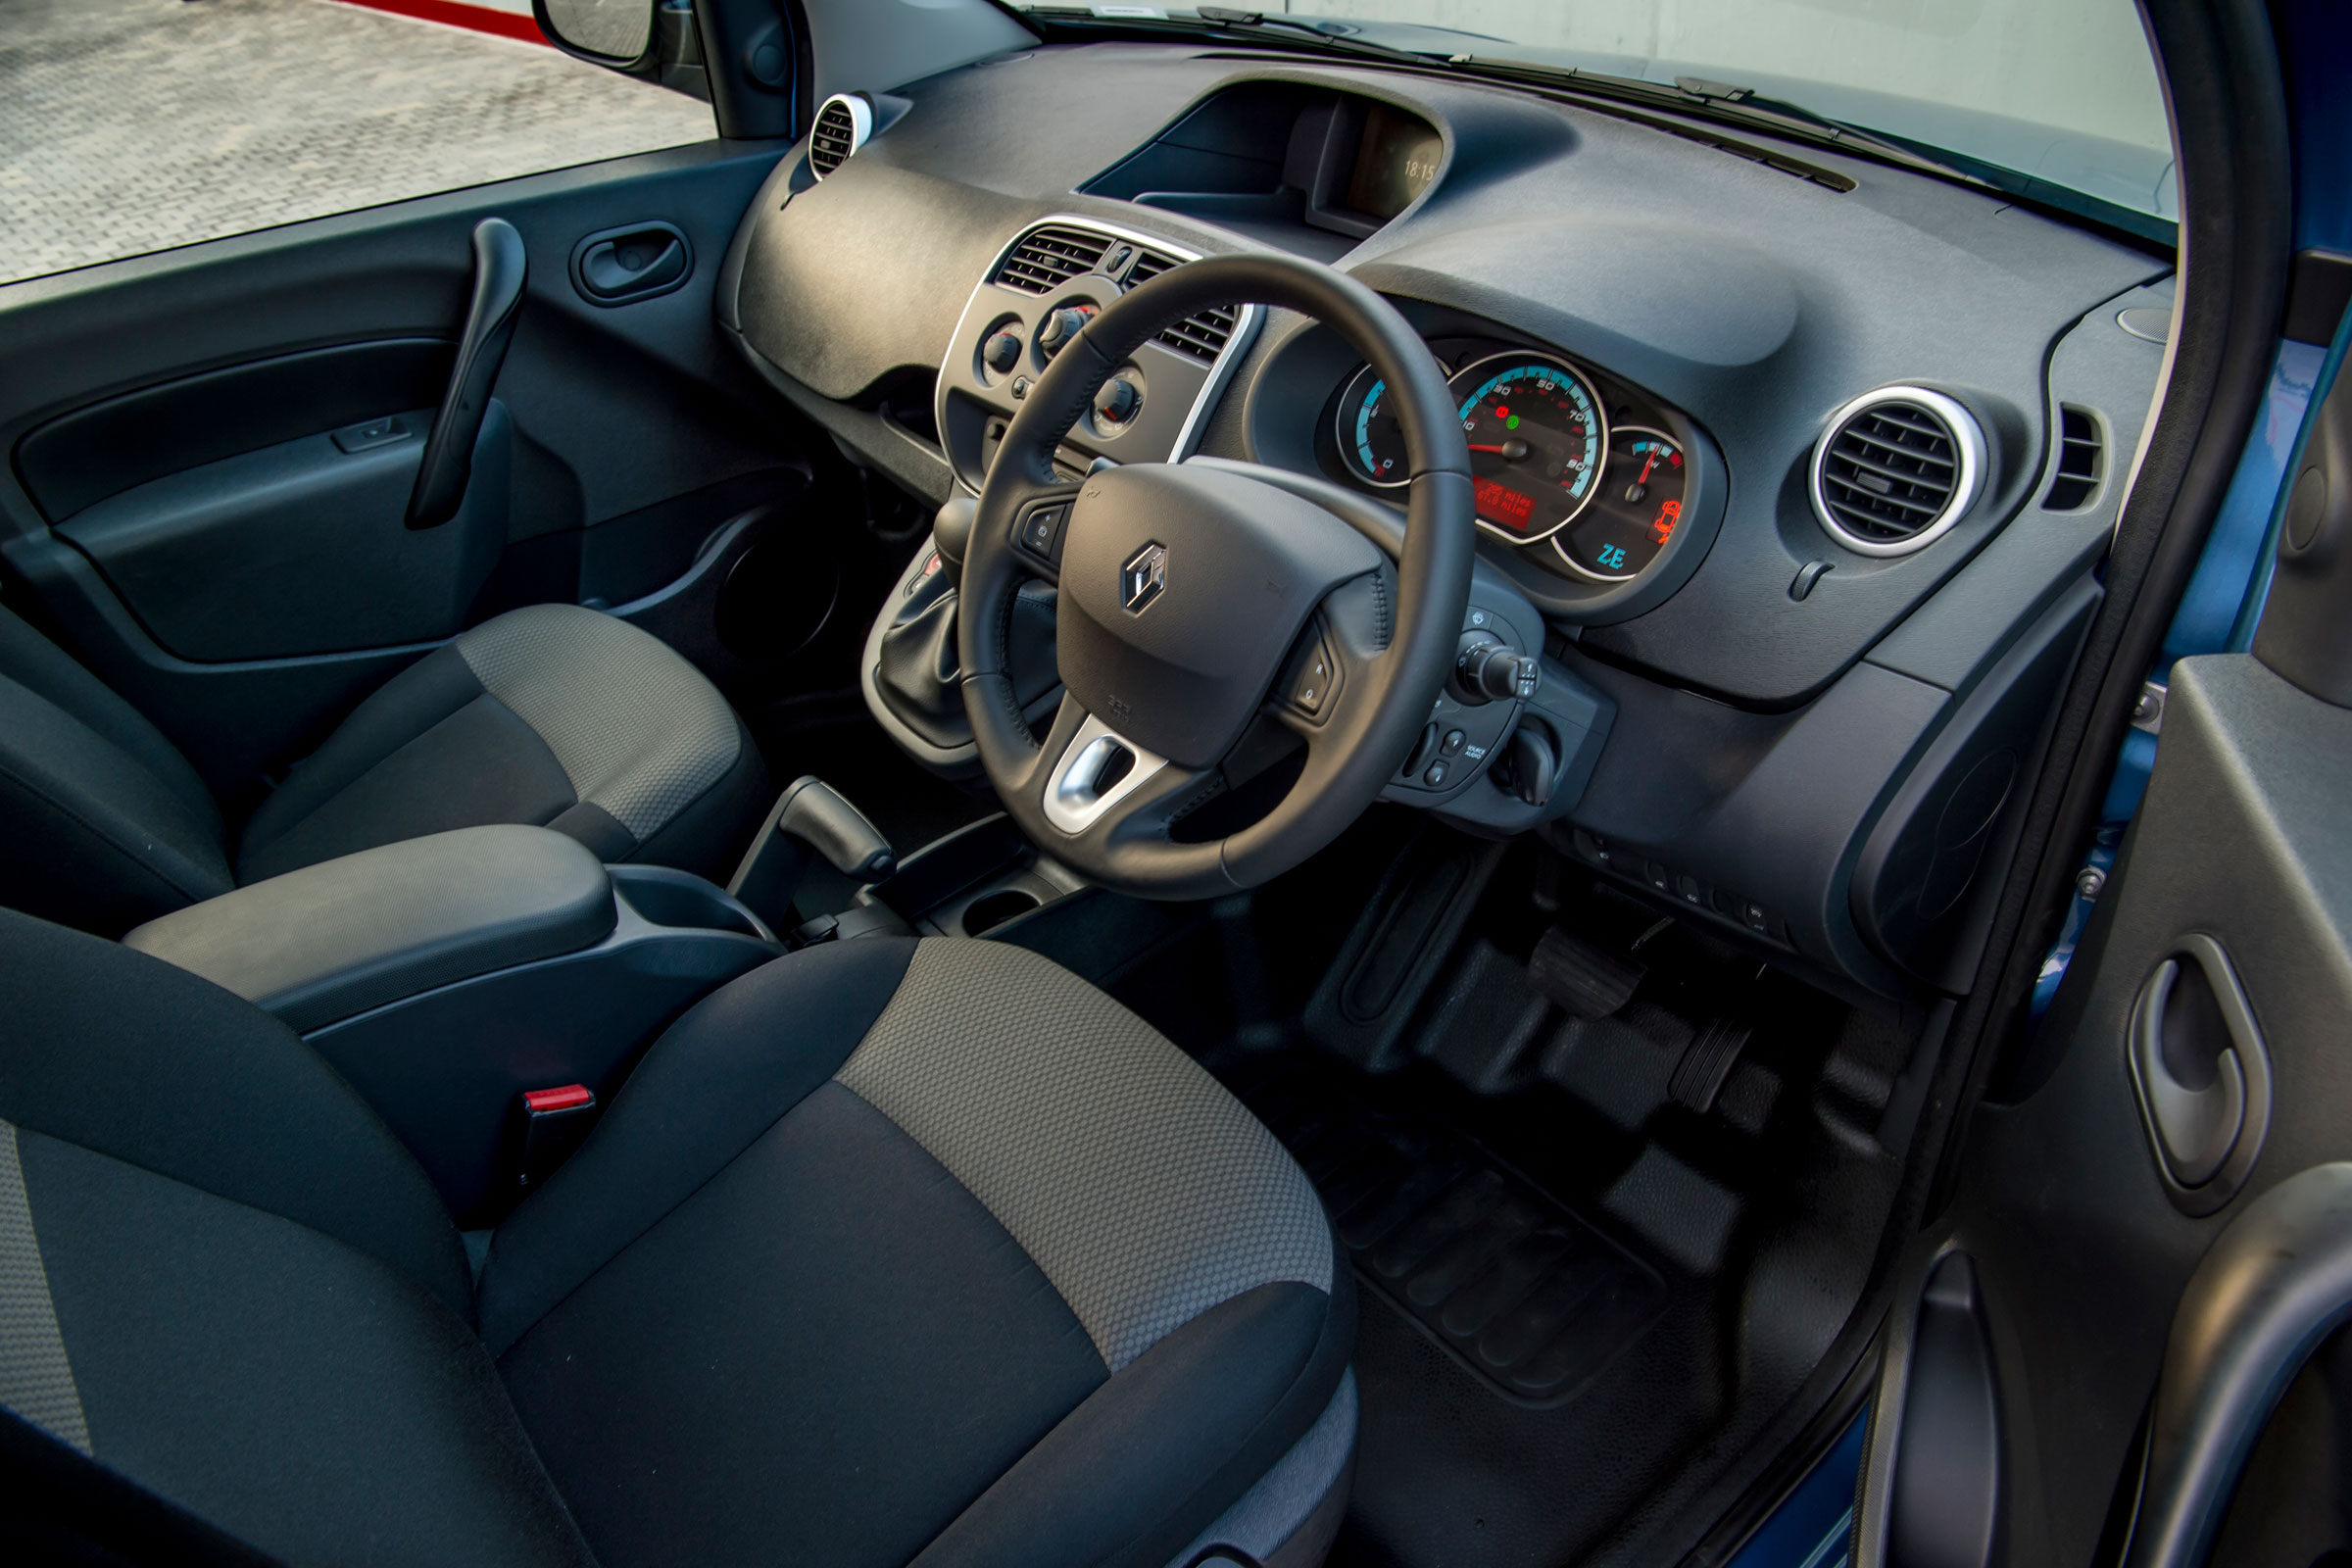 Renault Kangoo Z.E. van interior & comfort | DrivingElectric